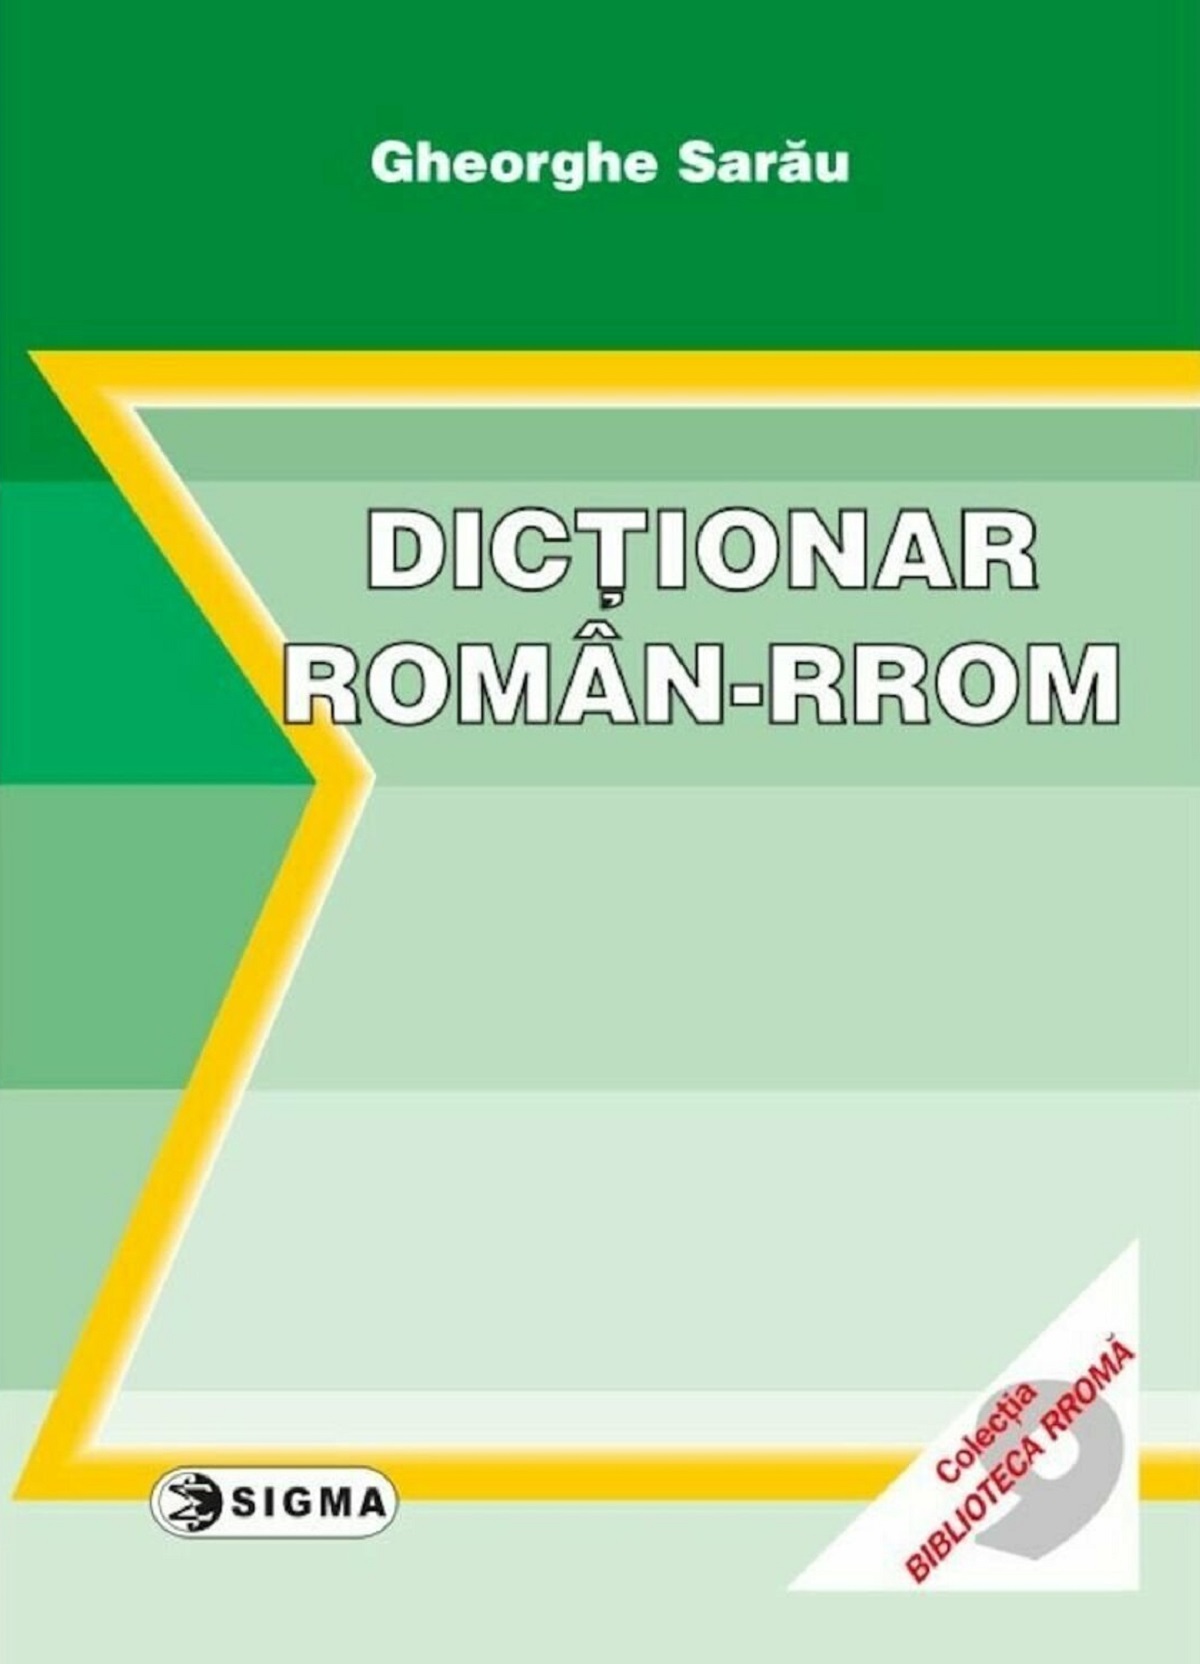 Dictionar roman-rrom - Gheorghe Sarau